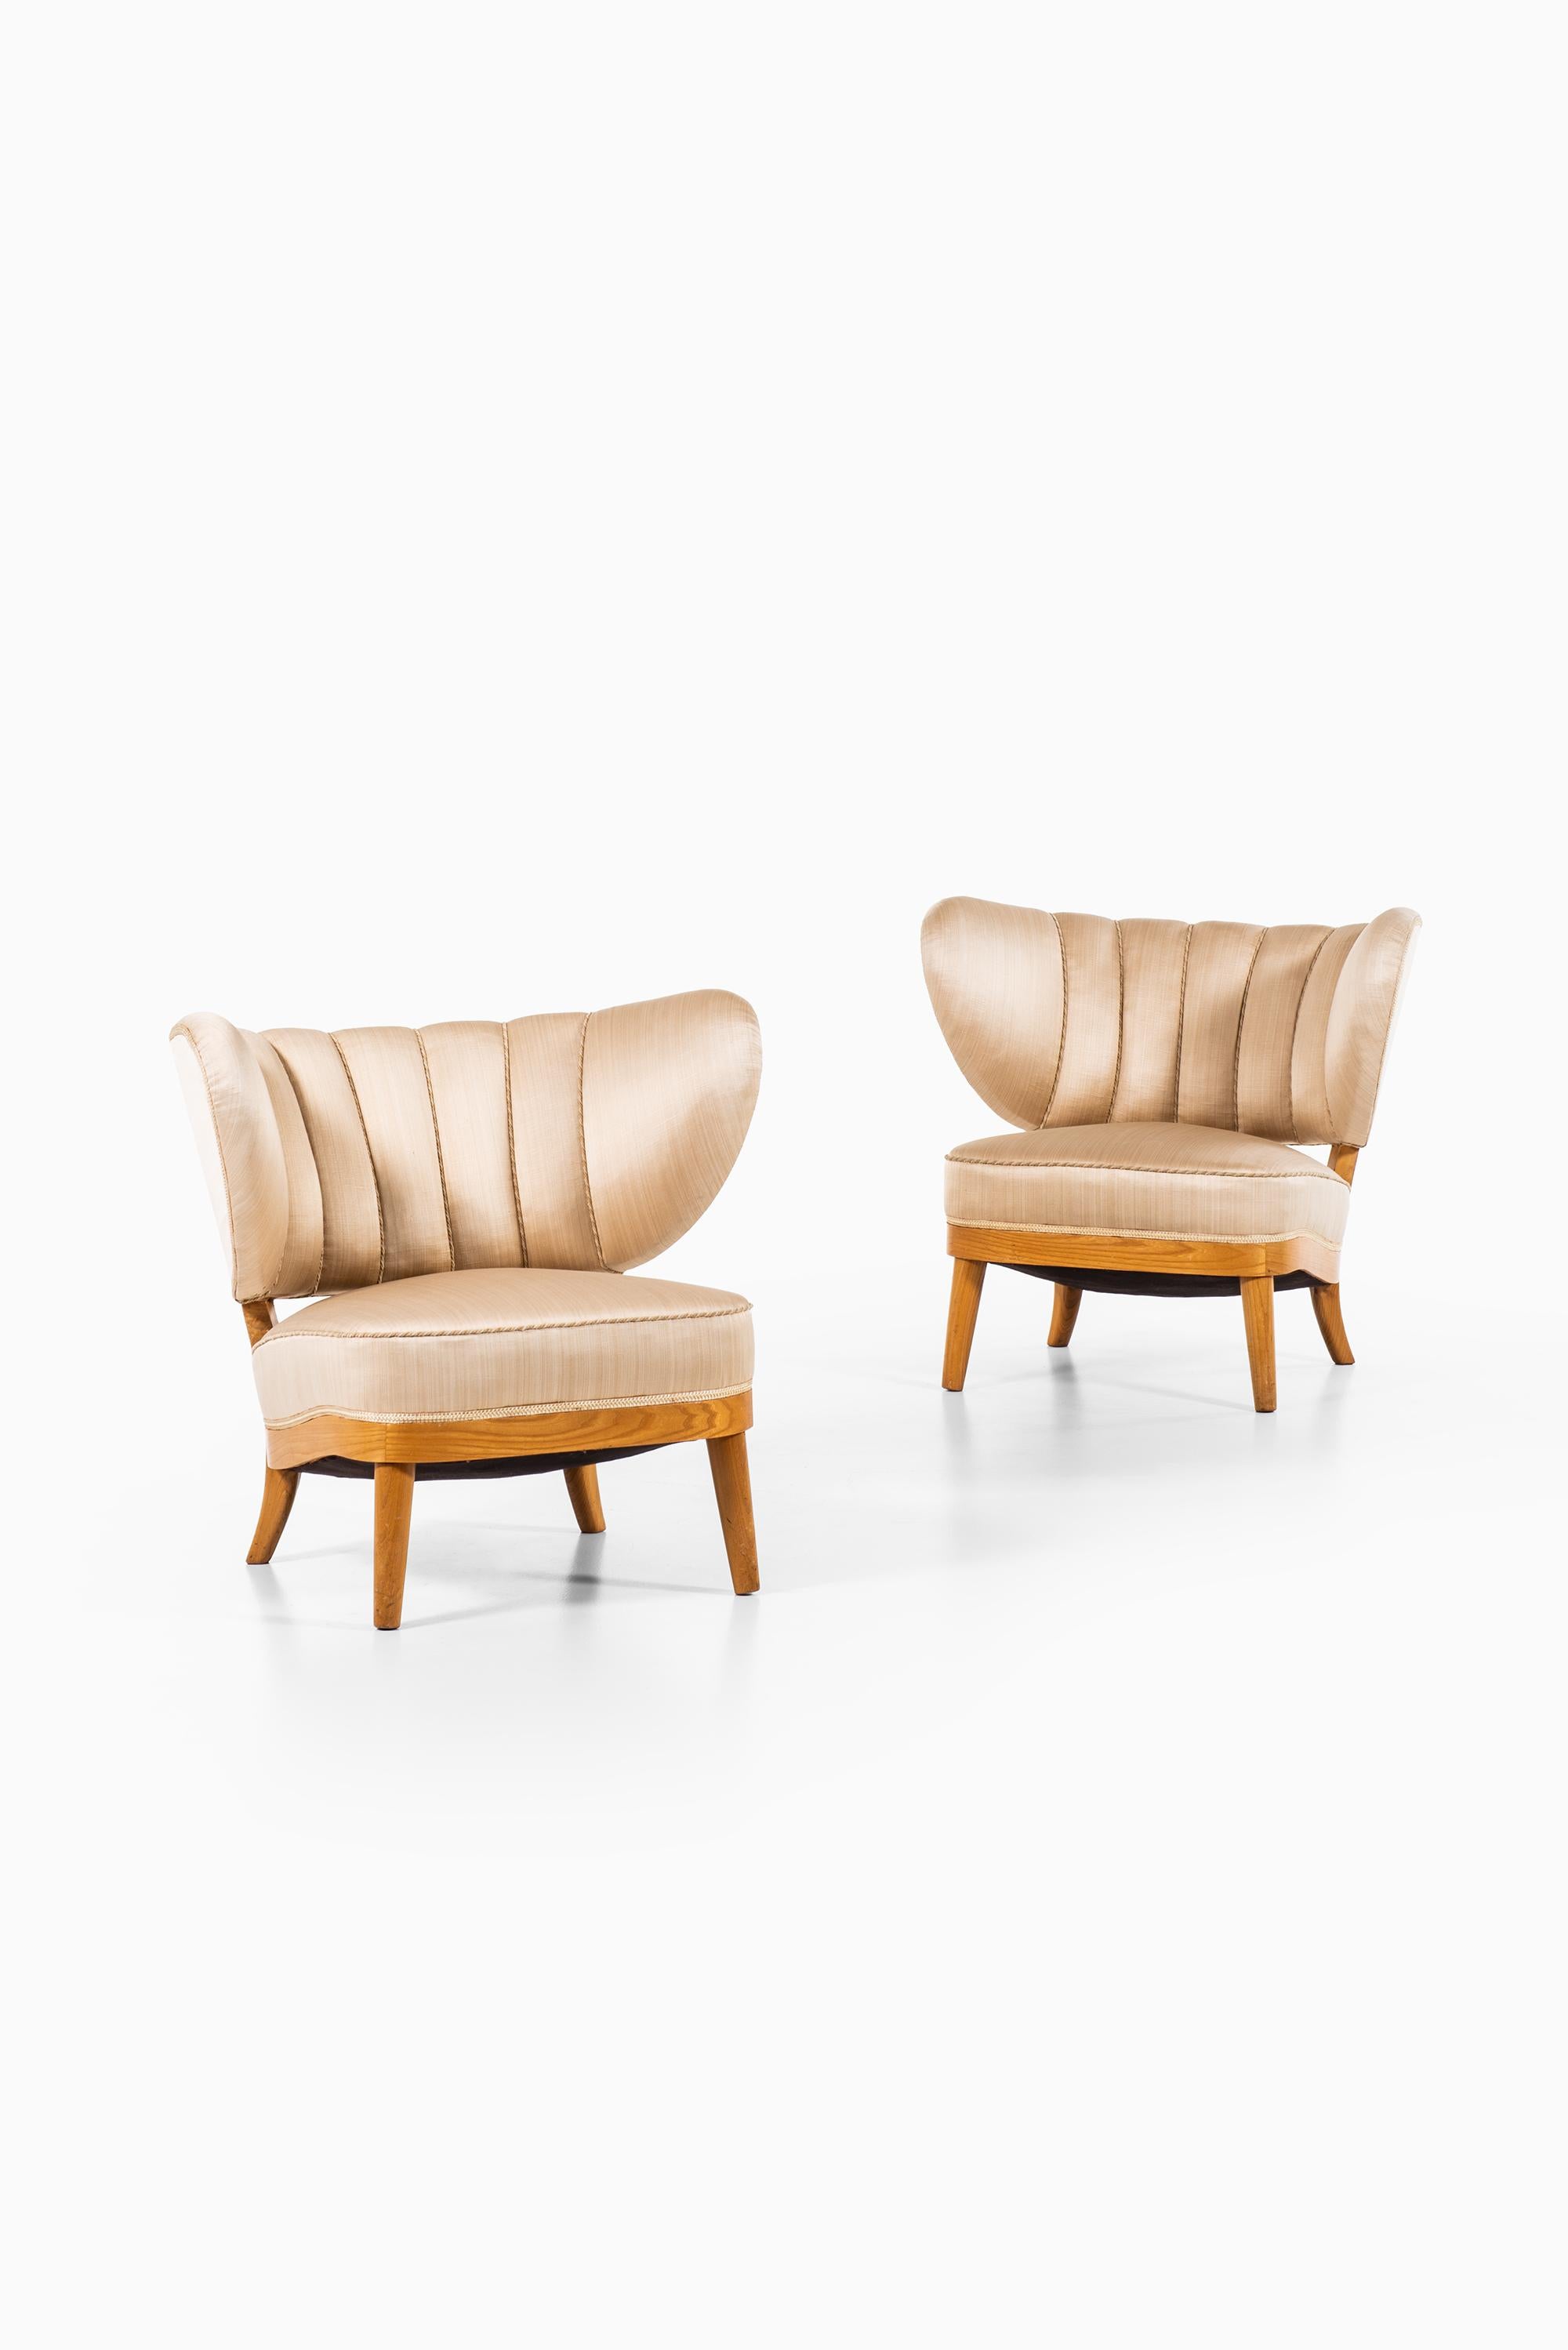 Otto Schulz Easy Chairs Produziert von Boet in Schweden (Seide)